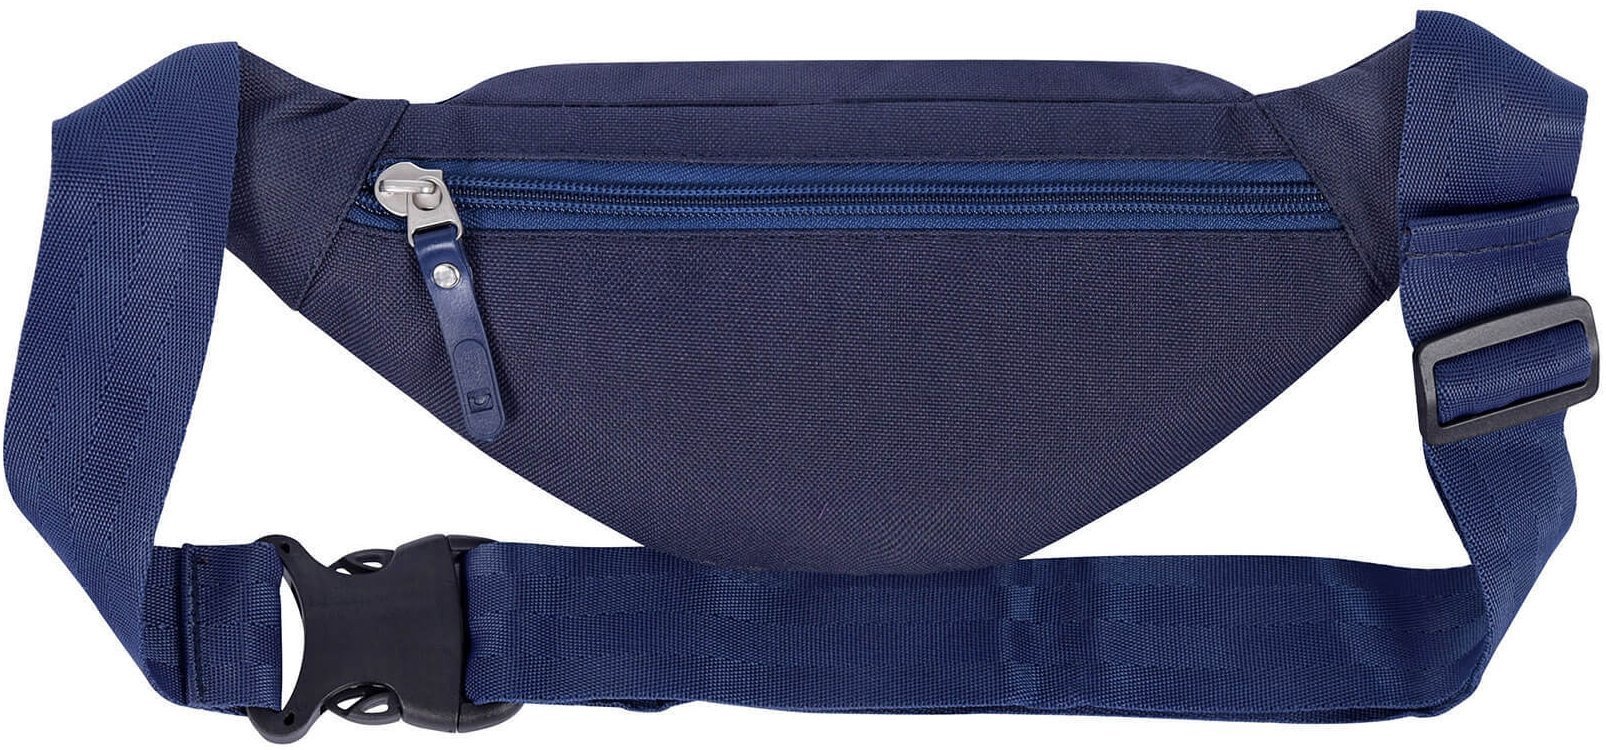 Темно-синяя поясная сумка из текстиля на два отделения Bagland (52920)